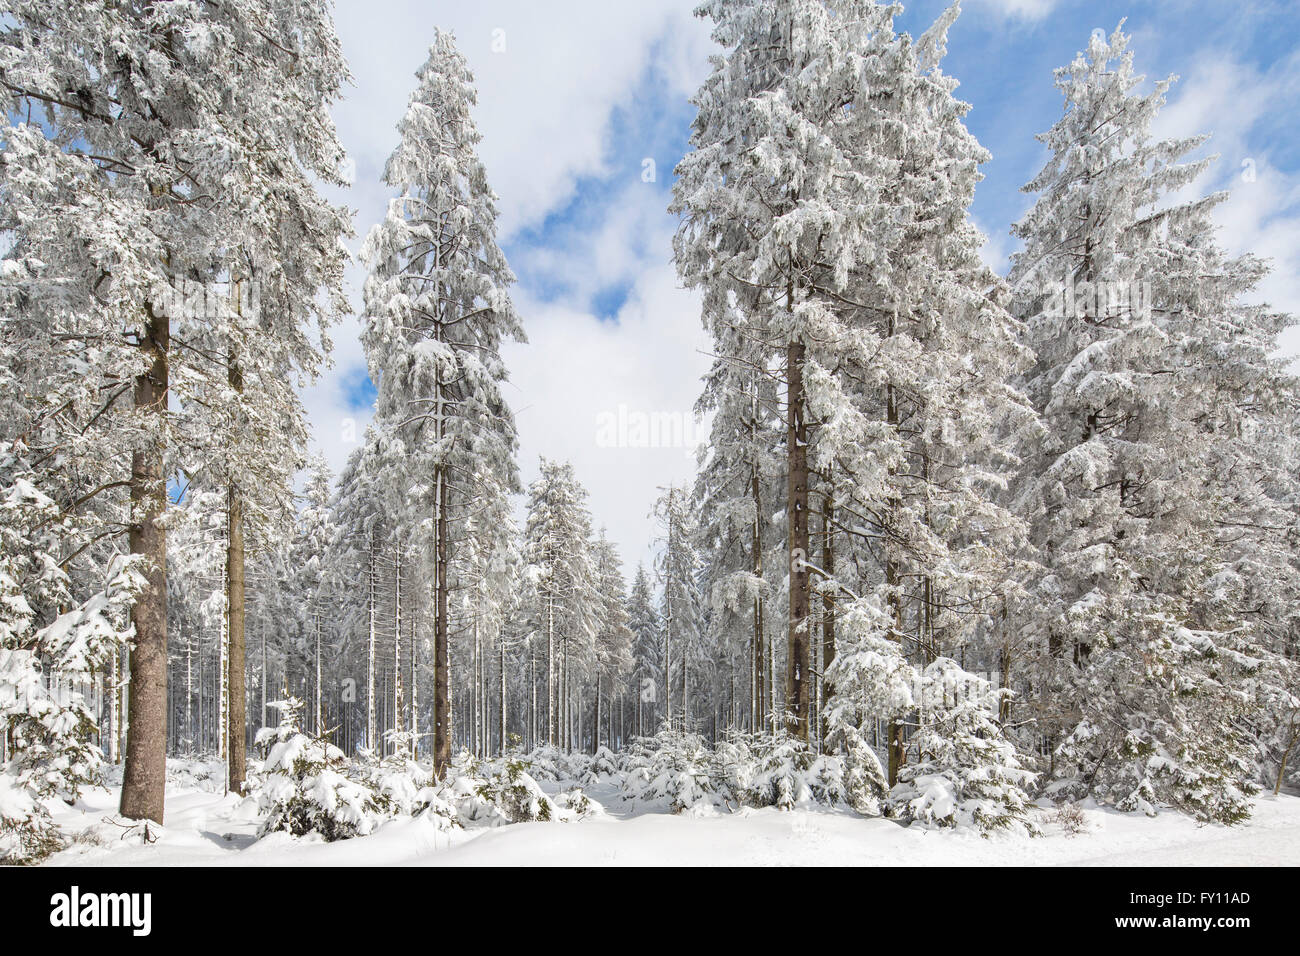 Pins dans la forêt de conifères recouverts de neige en hiver dans les Hautes Fagnes / Hautes Fagnes, Ardennes Belges, Belgique Banque D'Images